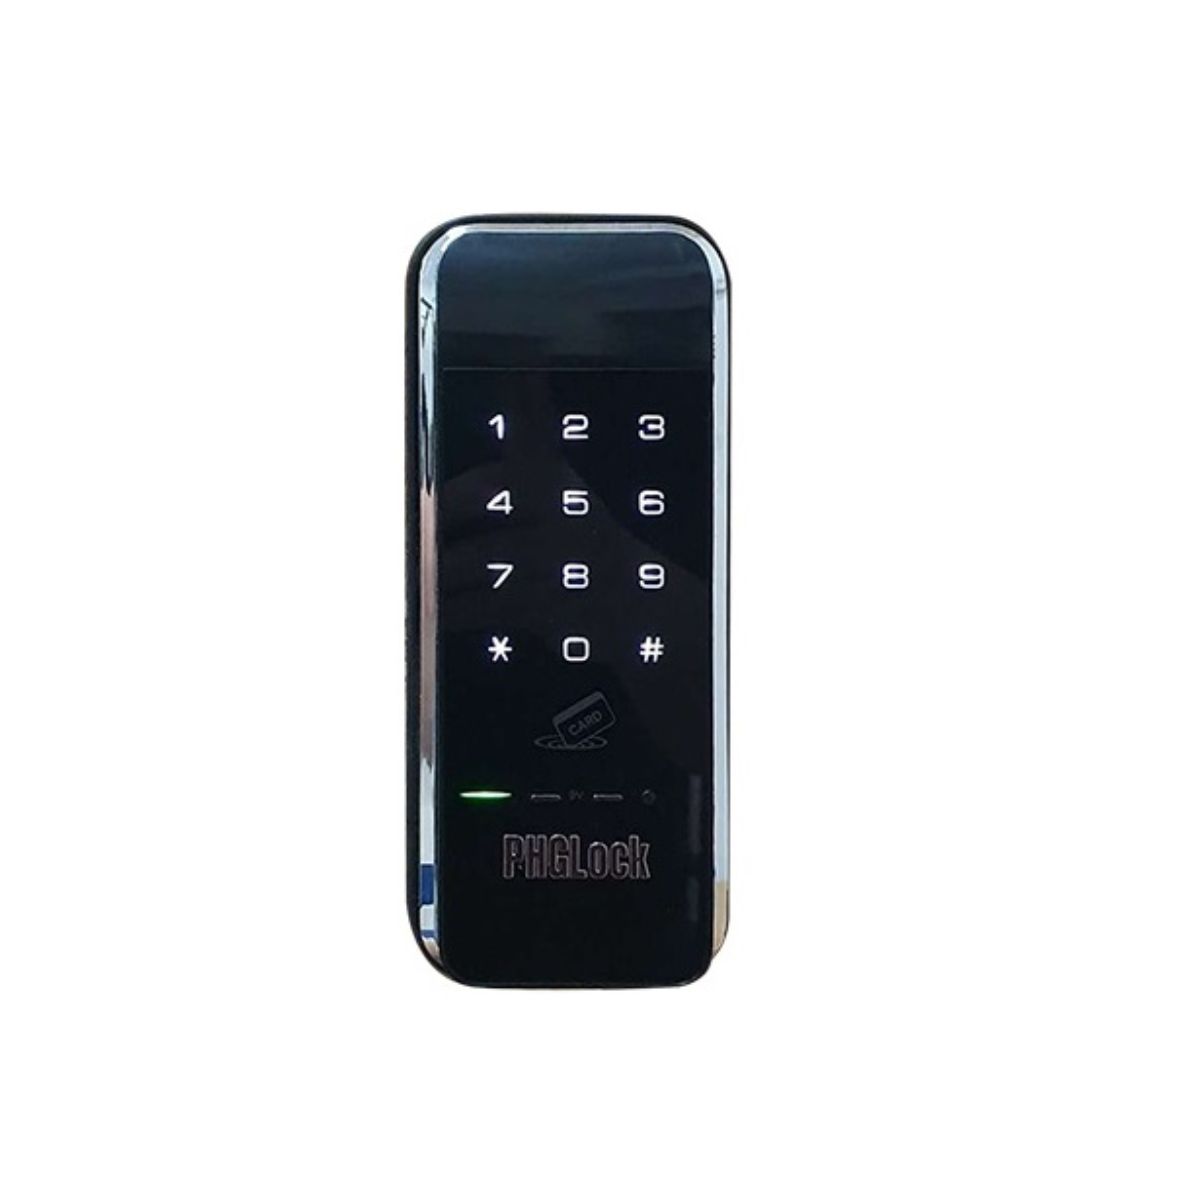 Khóa cửa thẻ từ PHGLock KR9100 50 thẻ cảm ứng, 1 mã số chủ, tích hợp chốt an toàn